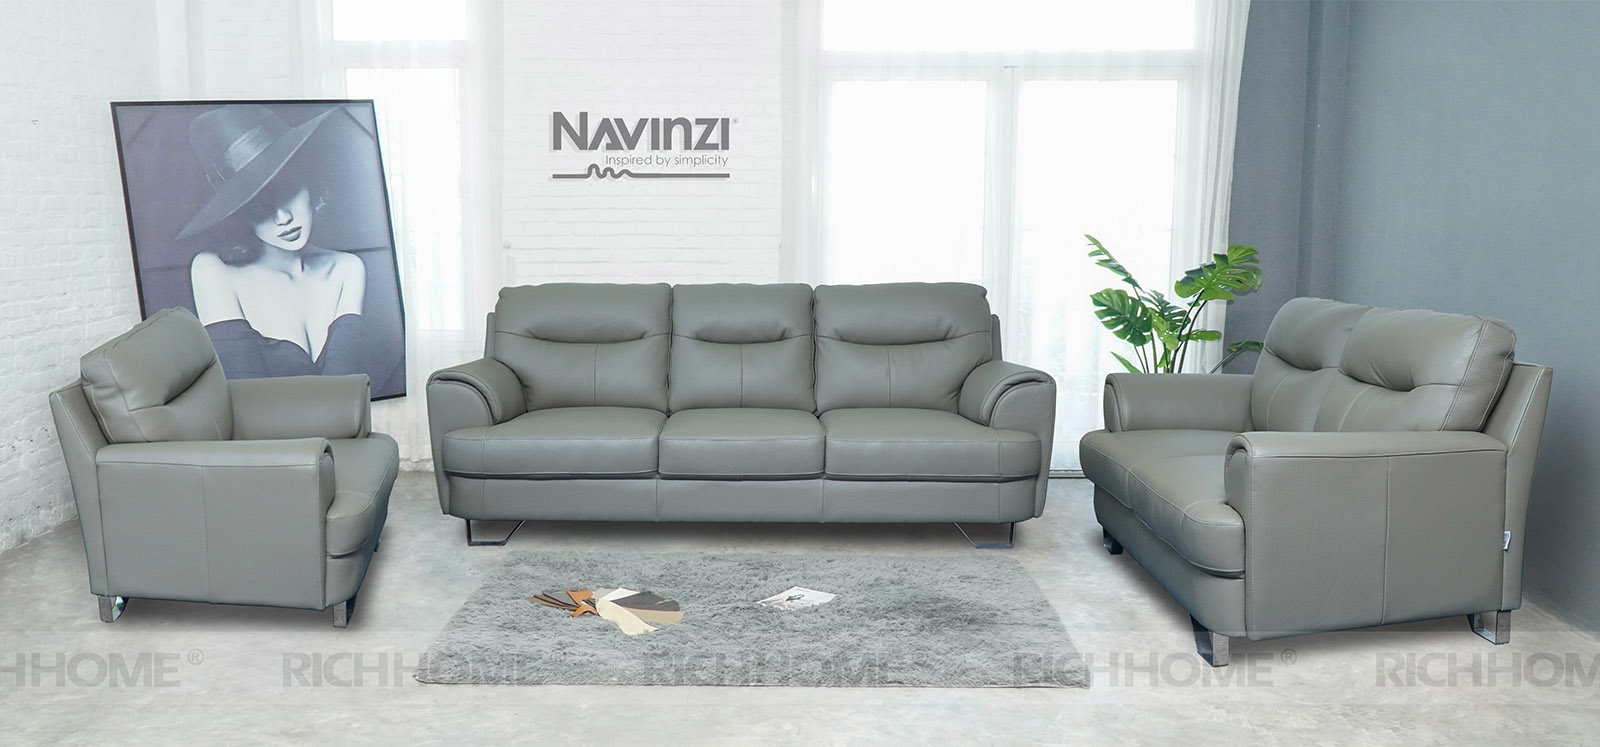 Hướng dẫn cách chọn kích thước sofa phù hợp cho từng không gian - Ảnh 4